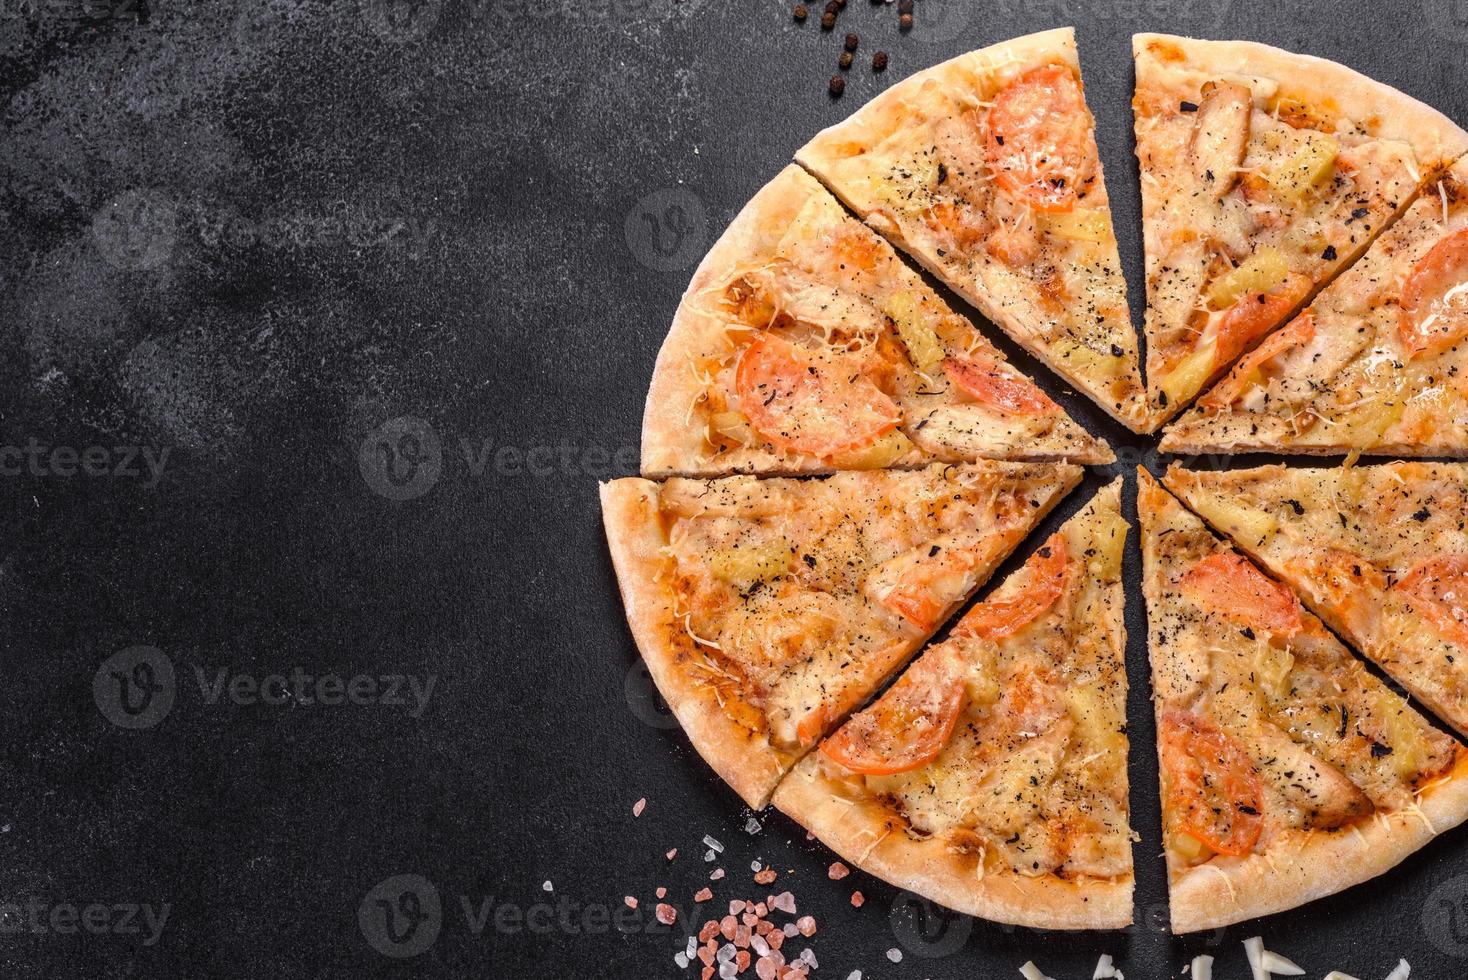 deliciosa pizza fresca hecha en un horno con mejillones camarones y otros mariscos foto